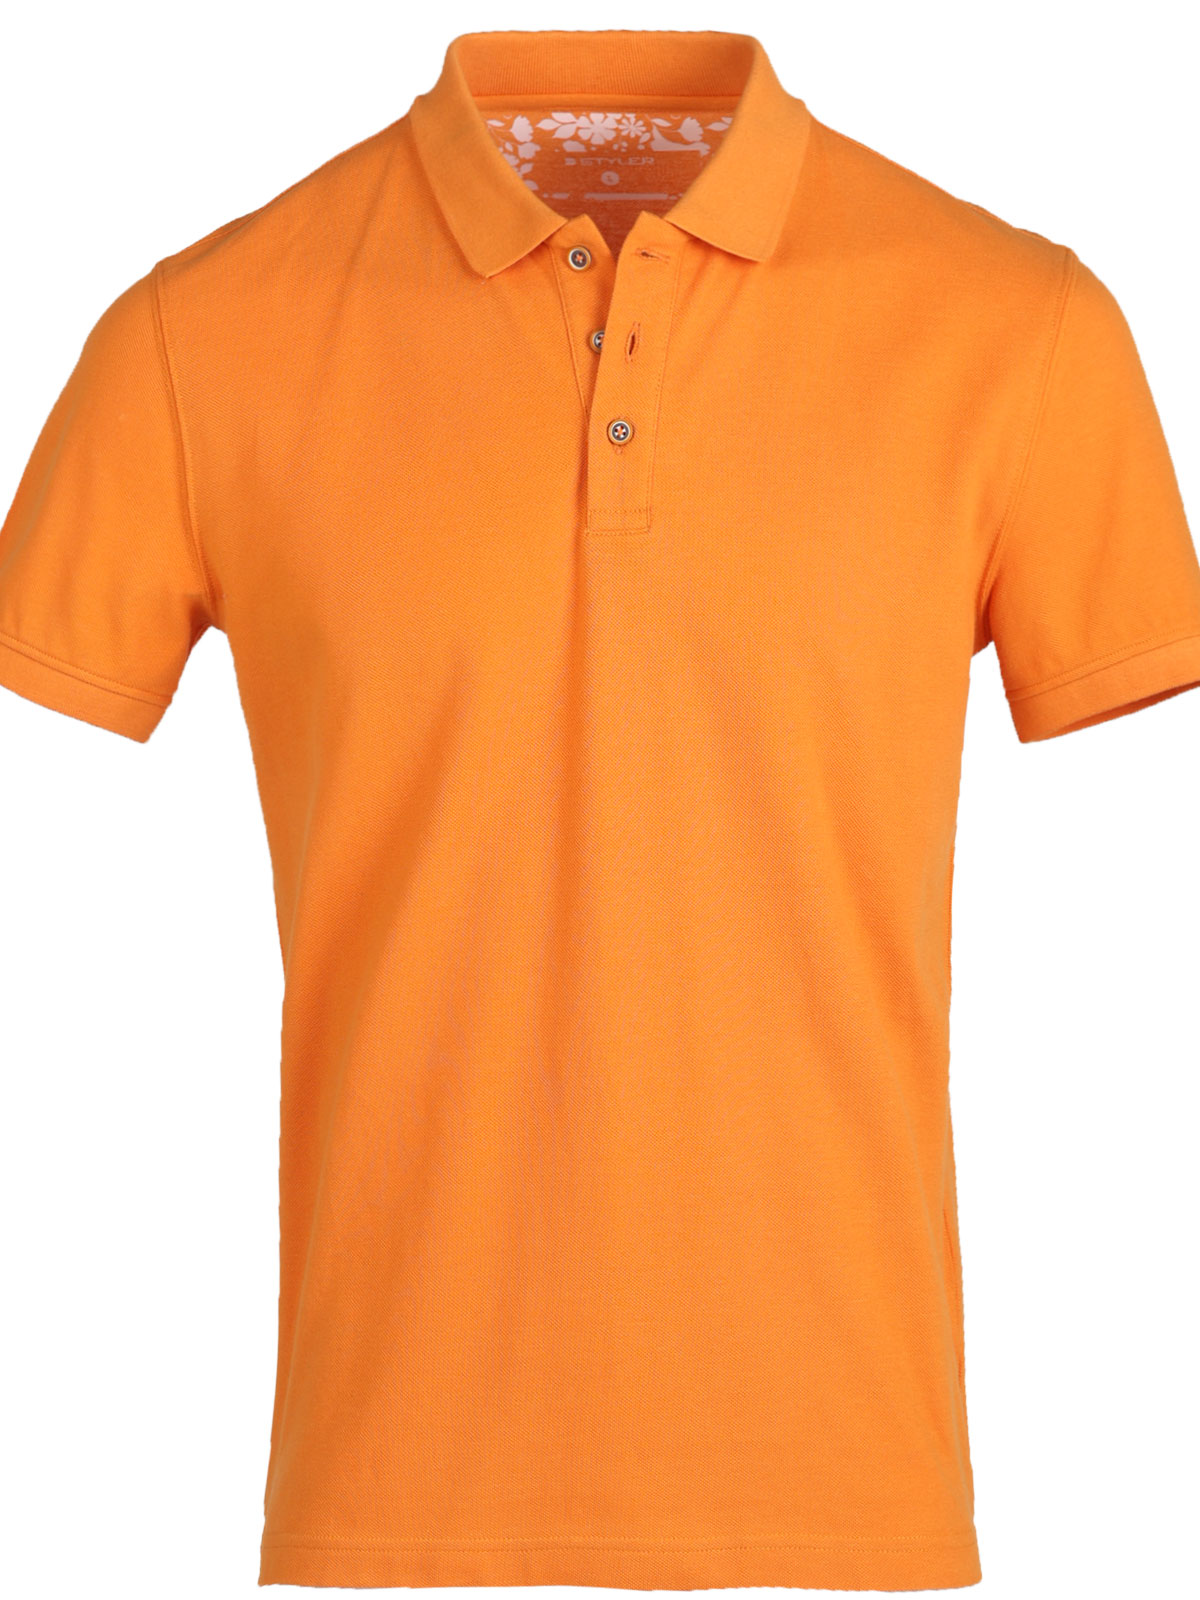 Tricou portocaliu cu guler tricotat - 93434 € 37.12 img3